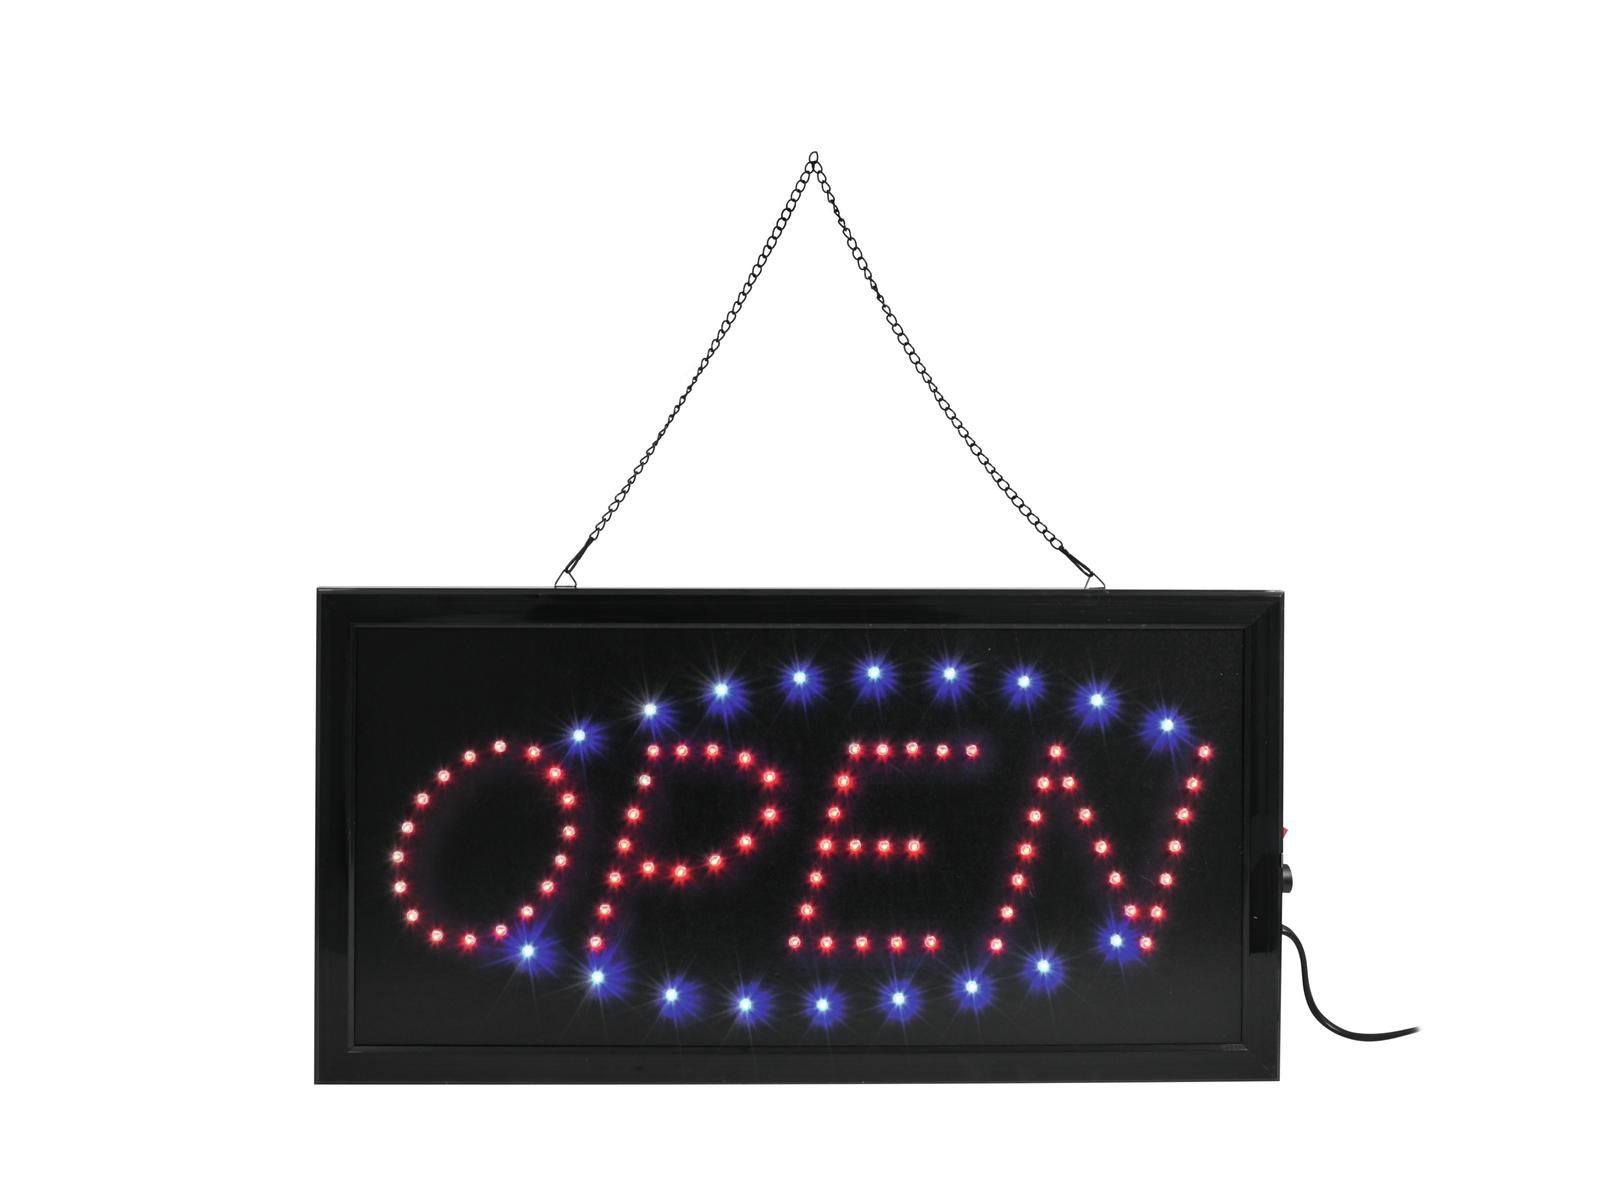 LED Schild Open - geöffnet rot blau   - LED Ambiente und  Beleuchtungslösungen